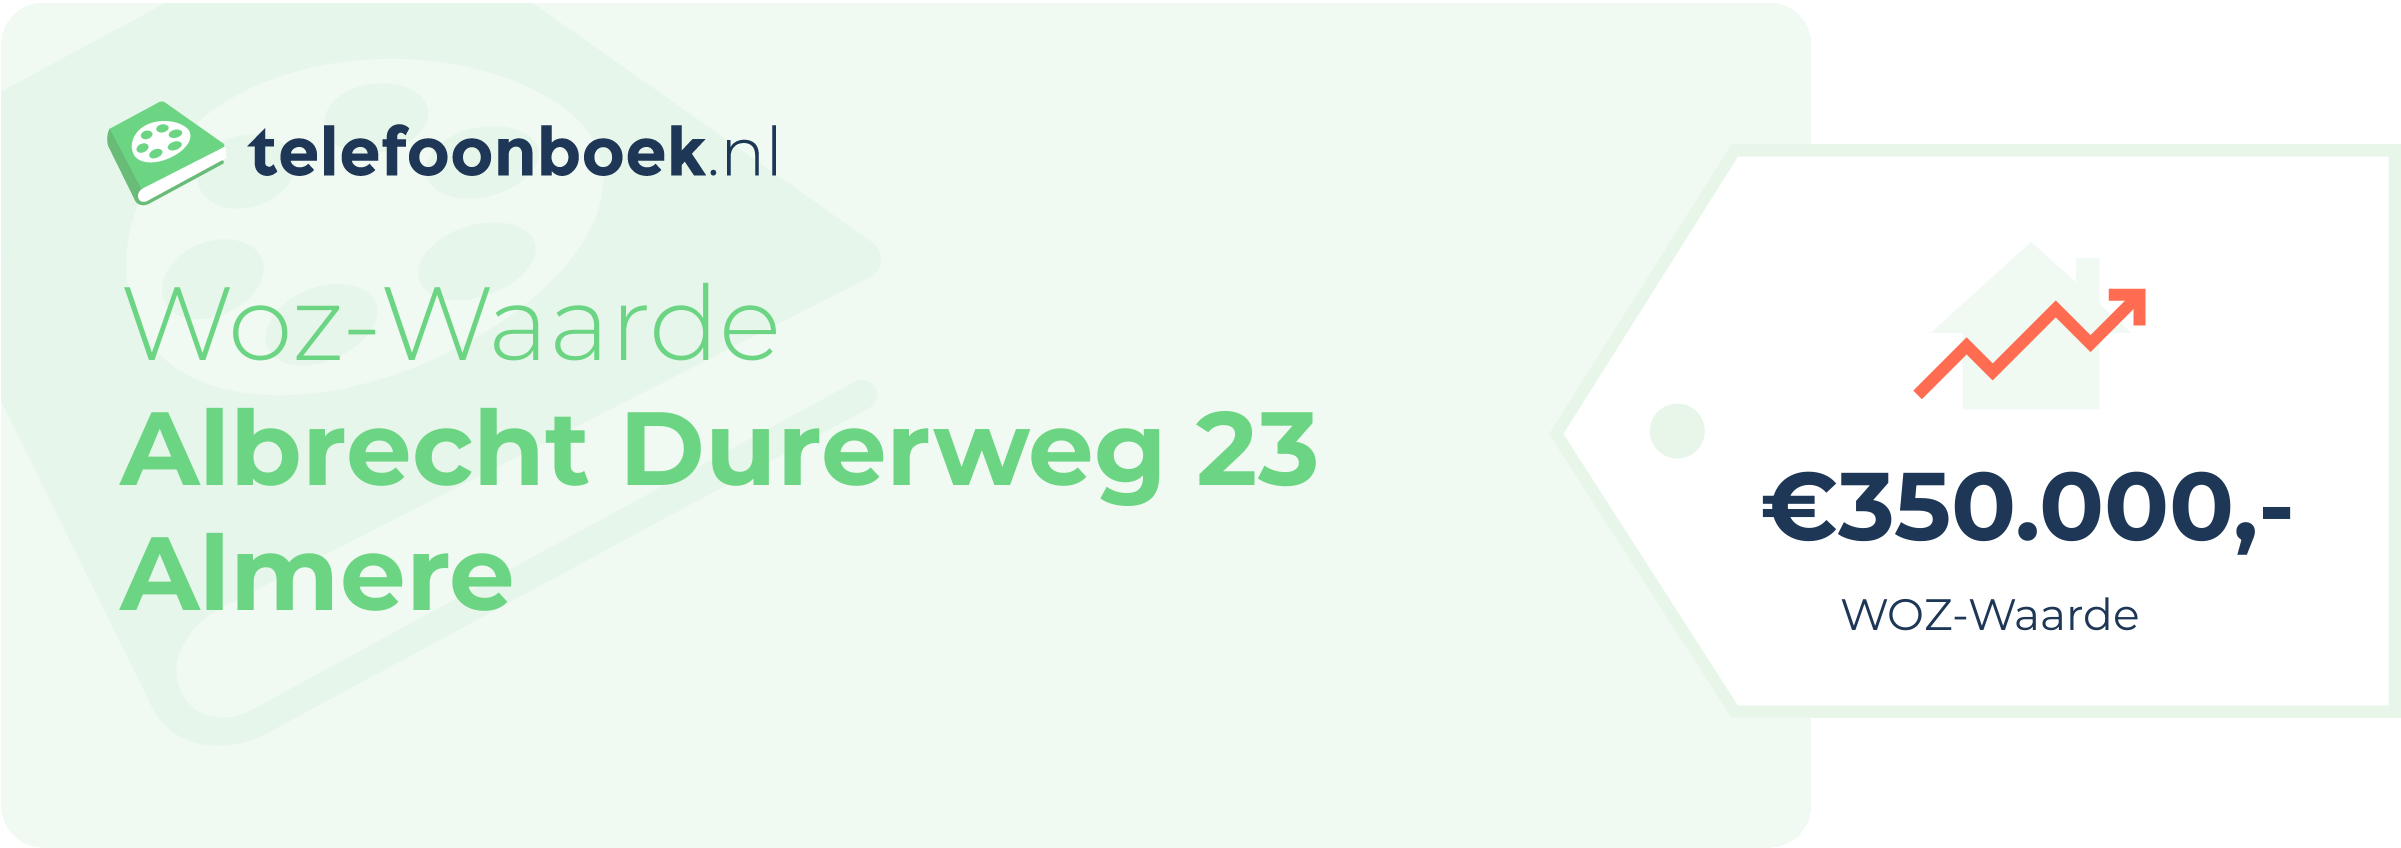 WOZ-waarde Albrecht Durerweg 23 Almere